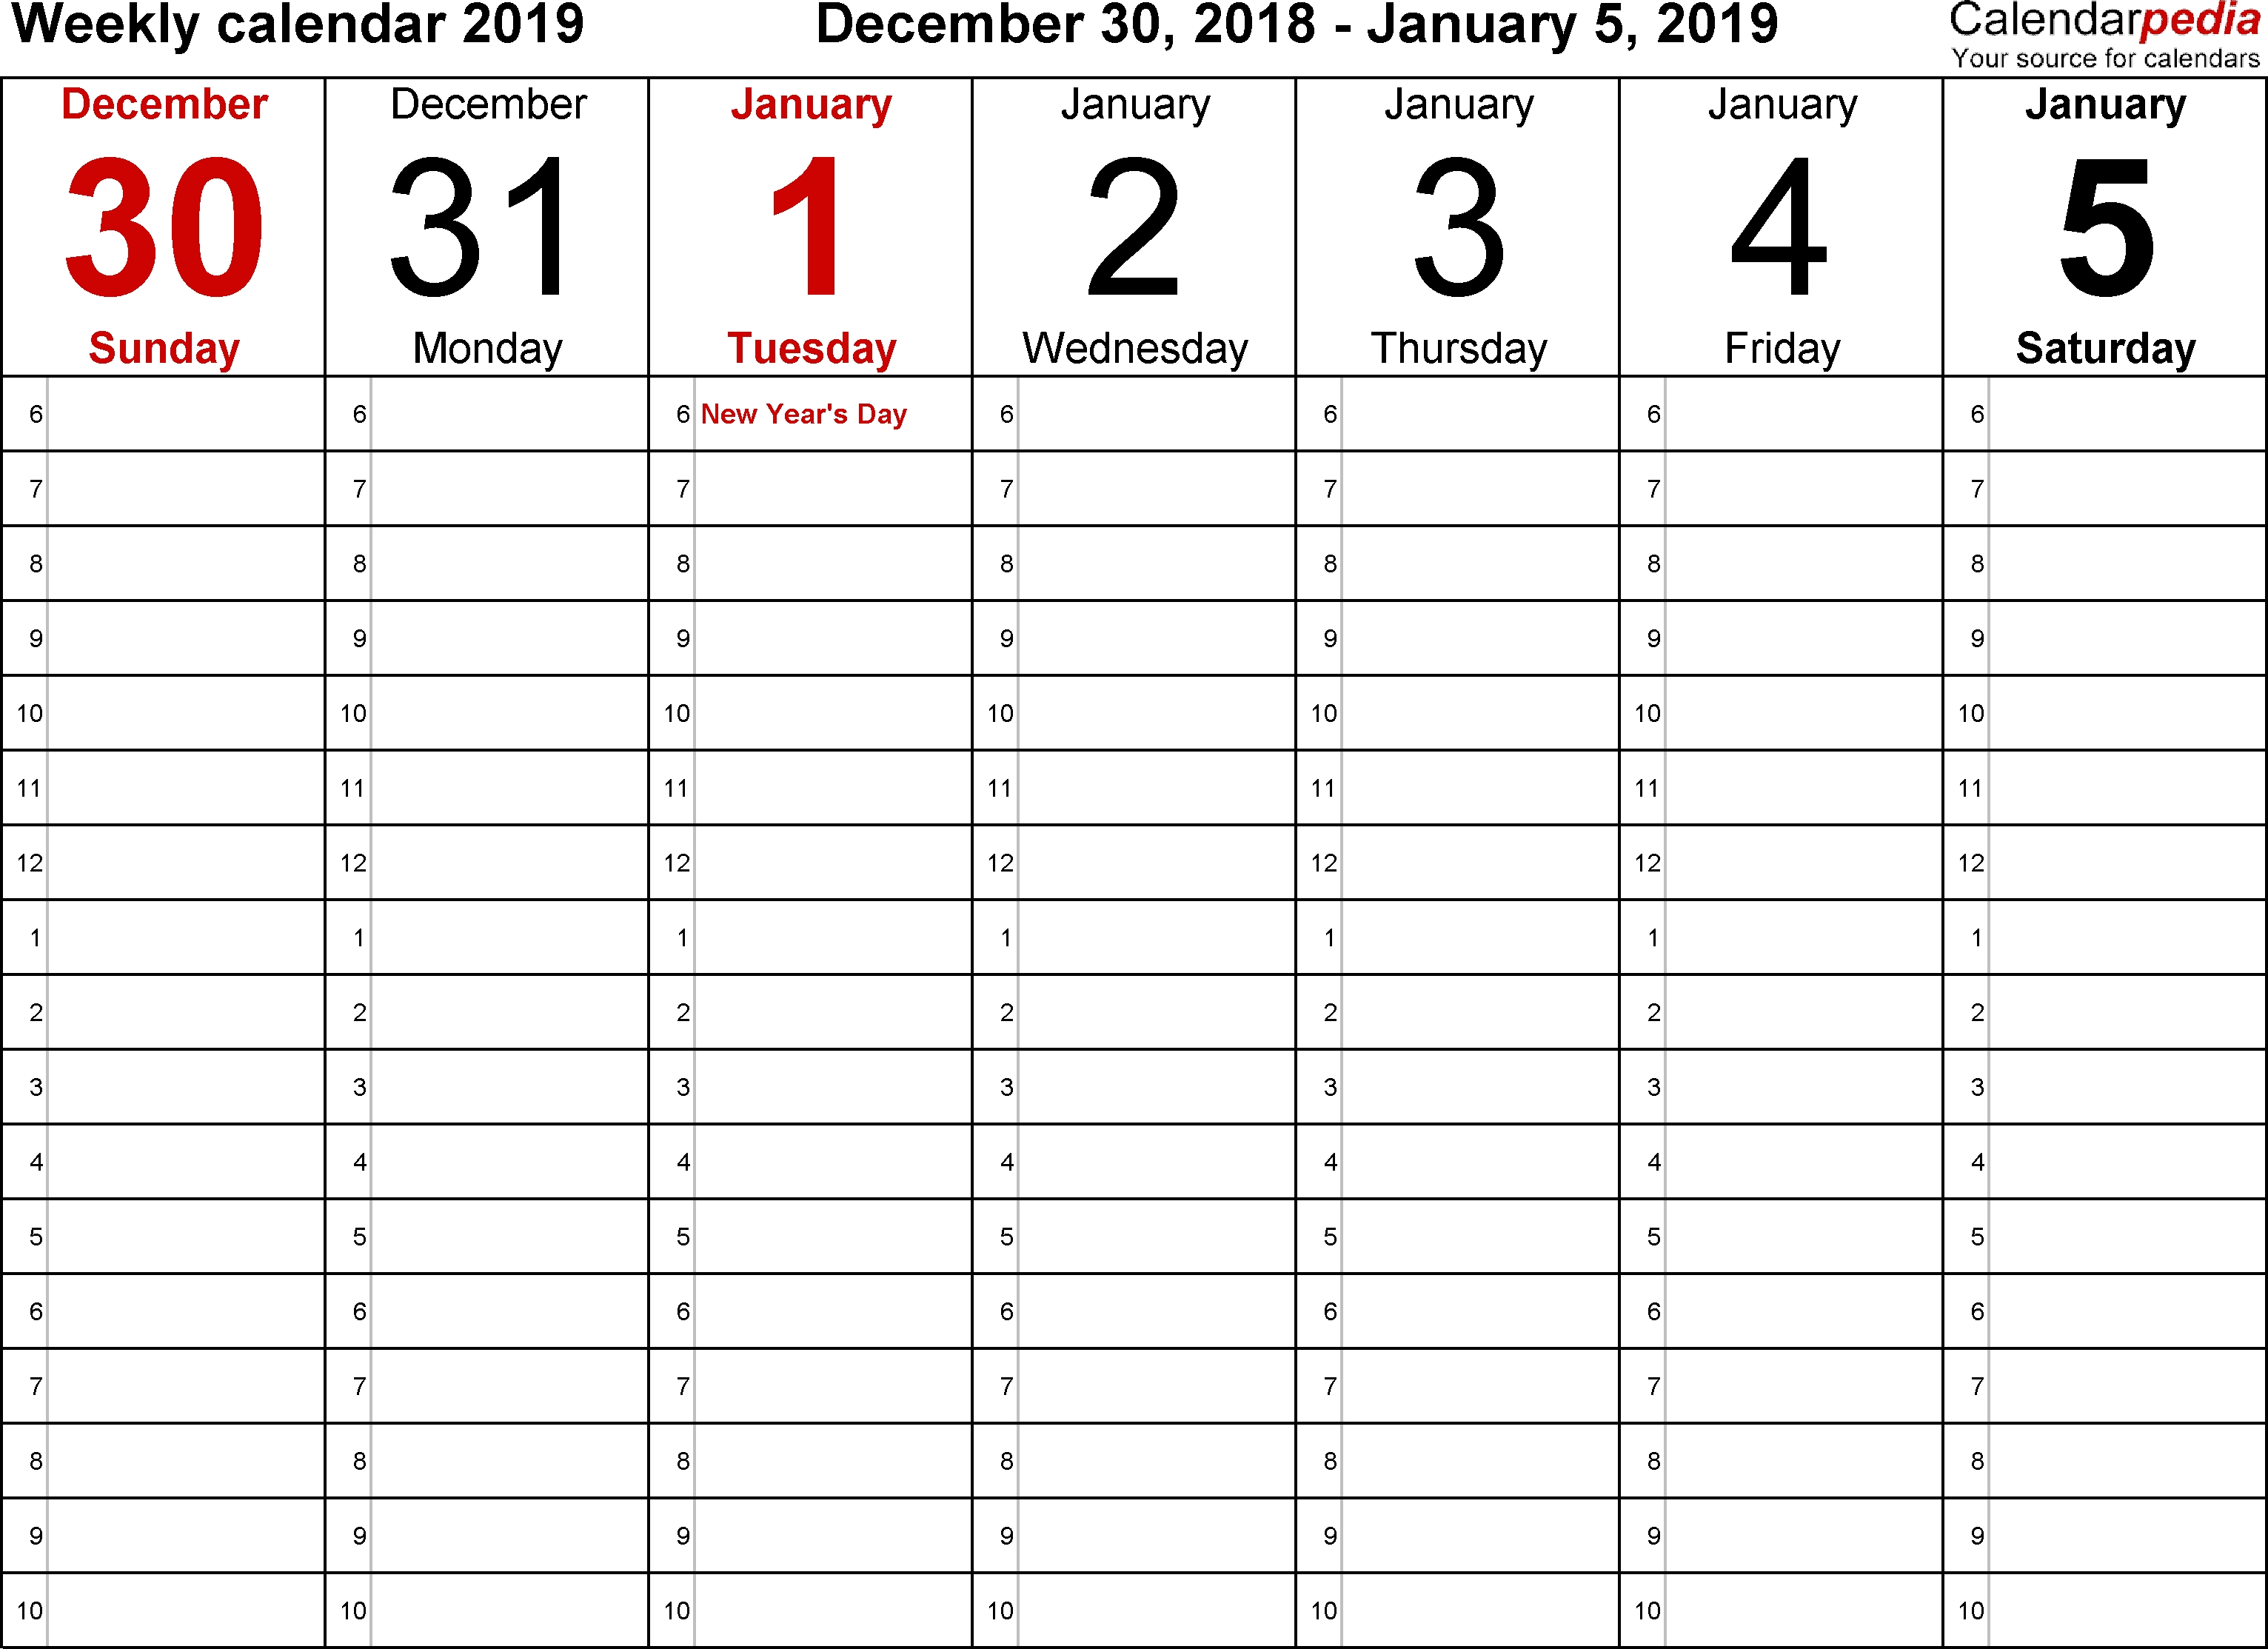 Weekly Calendars 2019 For Word - 12 Free Printable Templates-Week Planner Template Met Week Nummers